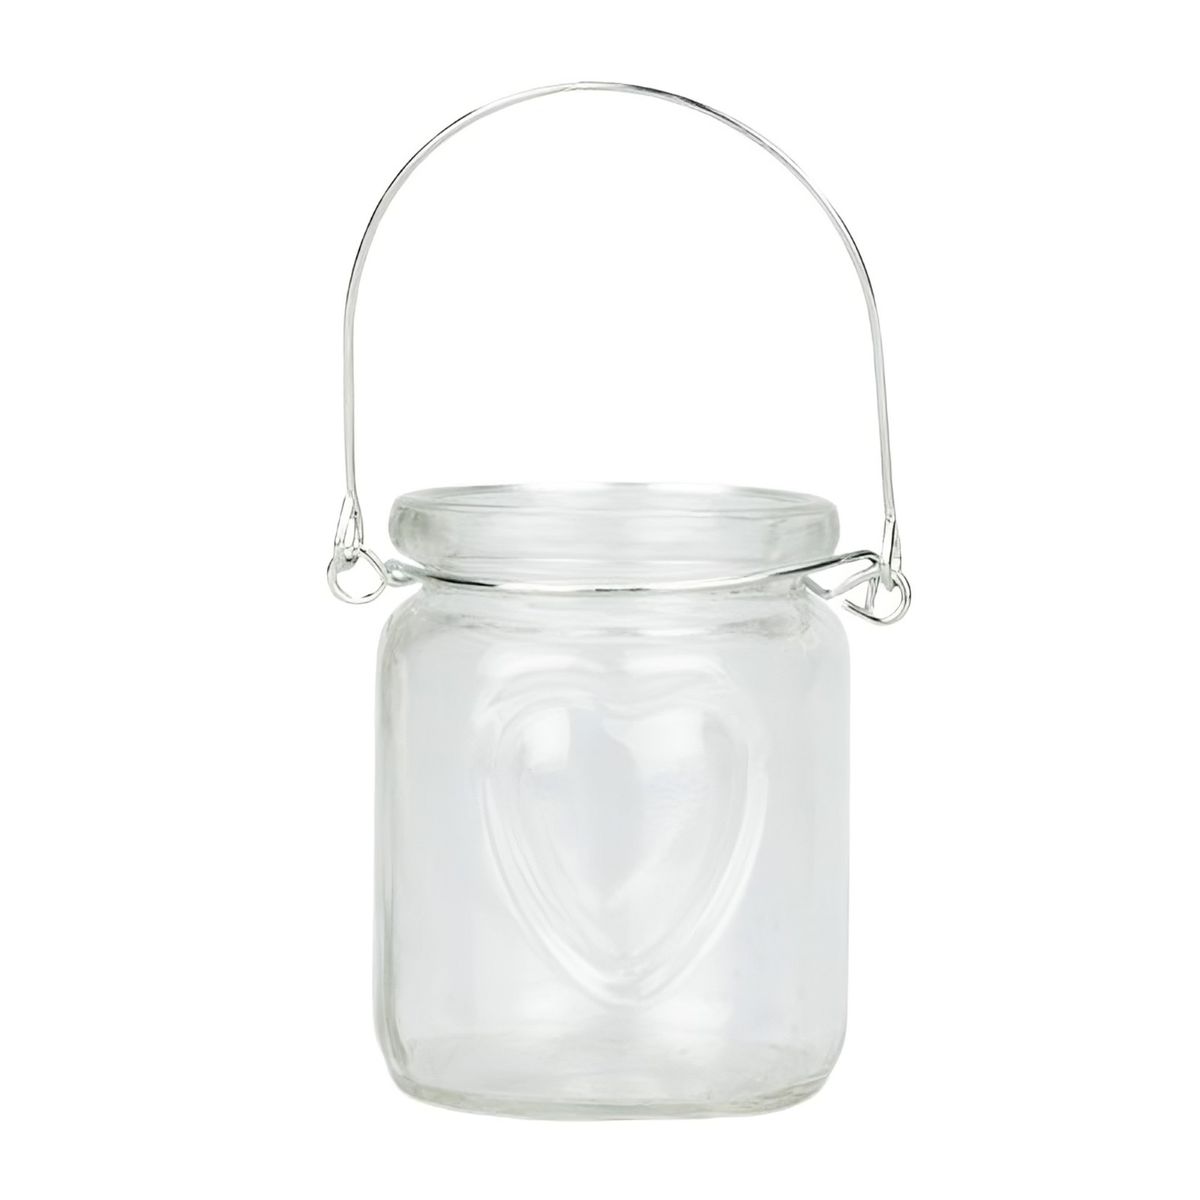 Windlichter aus Glas mit Herz-Motiv und Henkel, Packung mit 8 Stück,  Durchmesser 6cm, Höhe 7cm | NaDeco